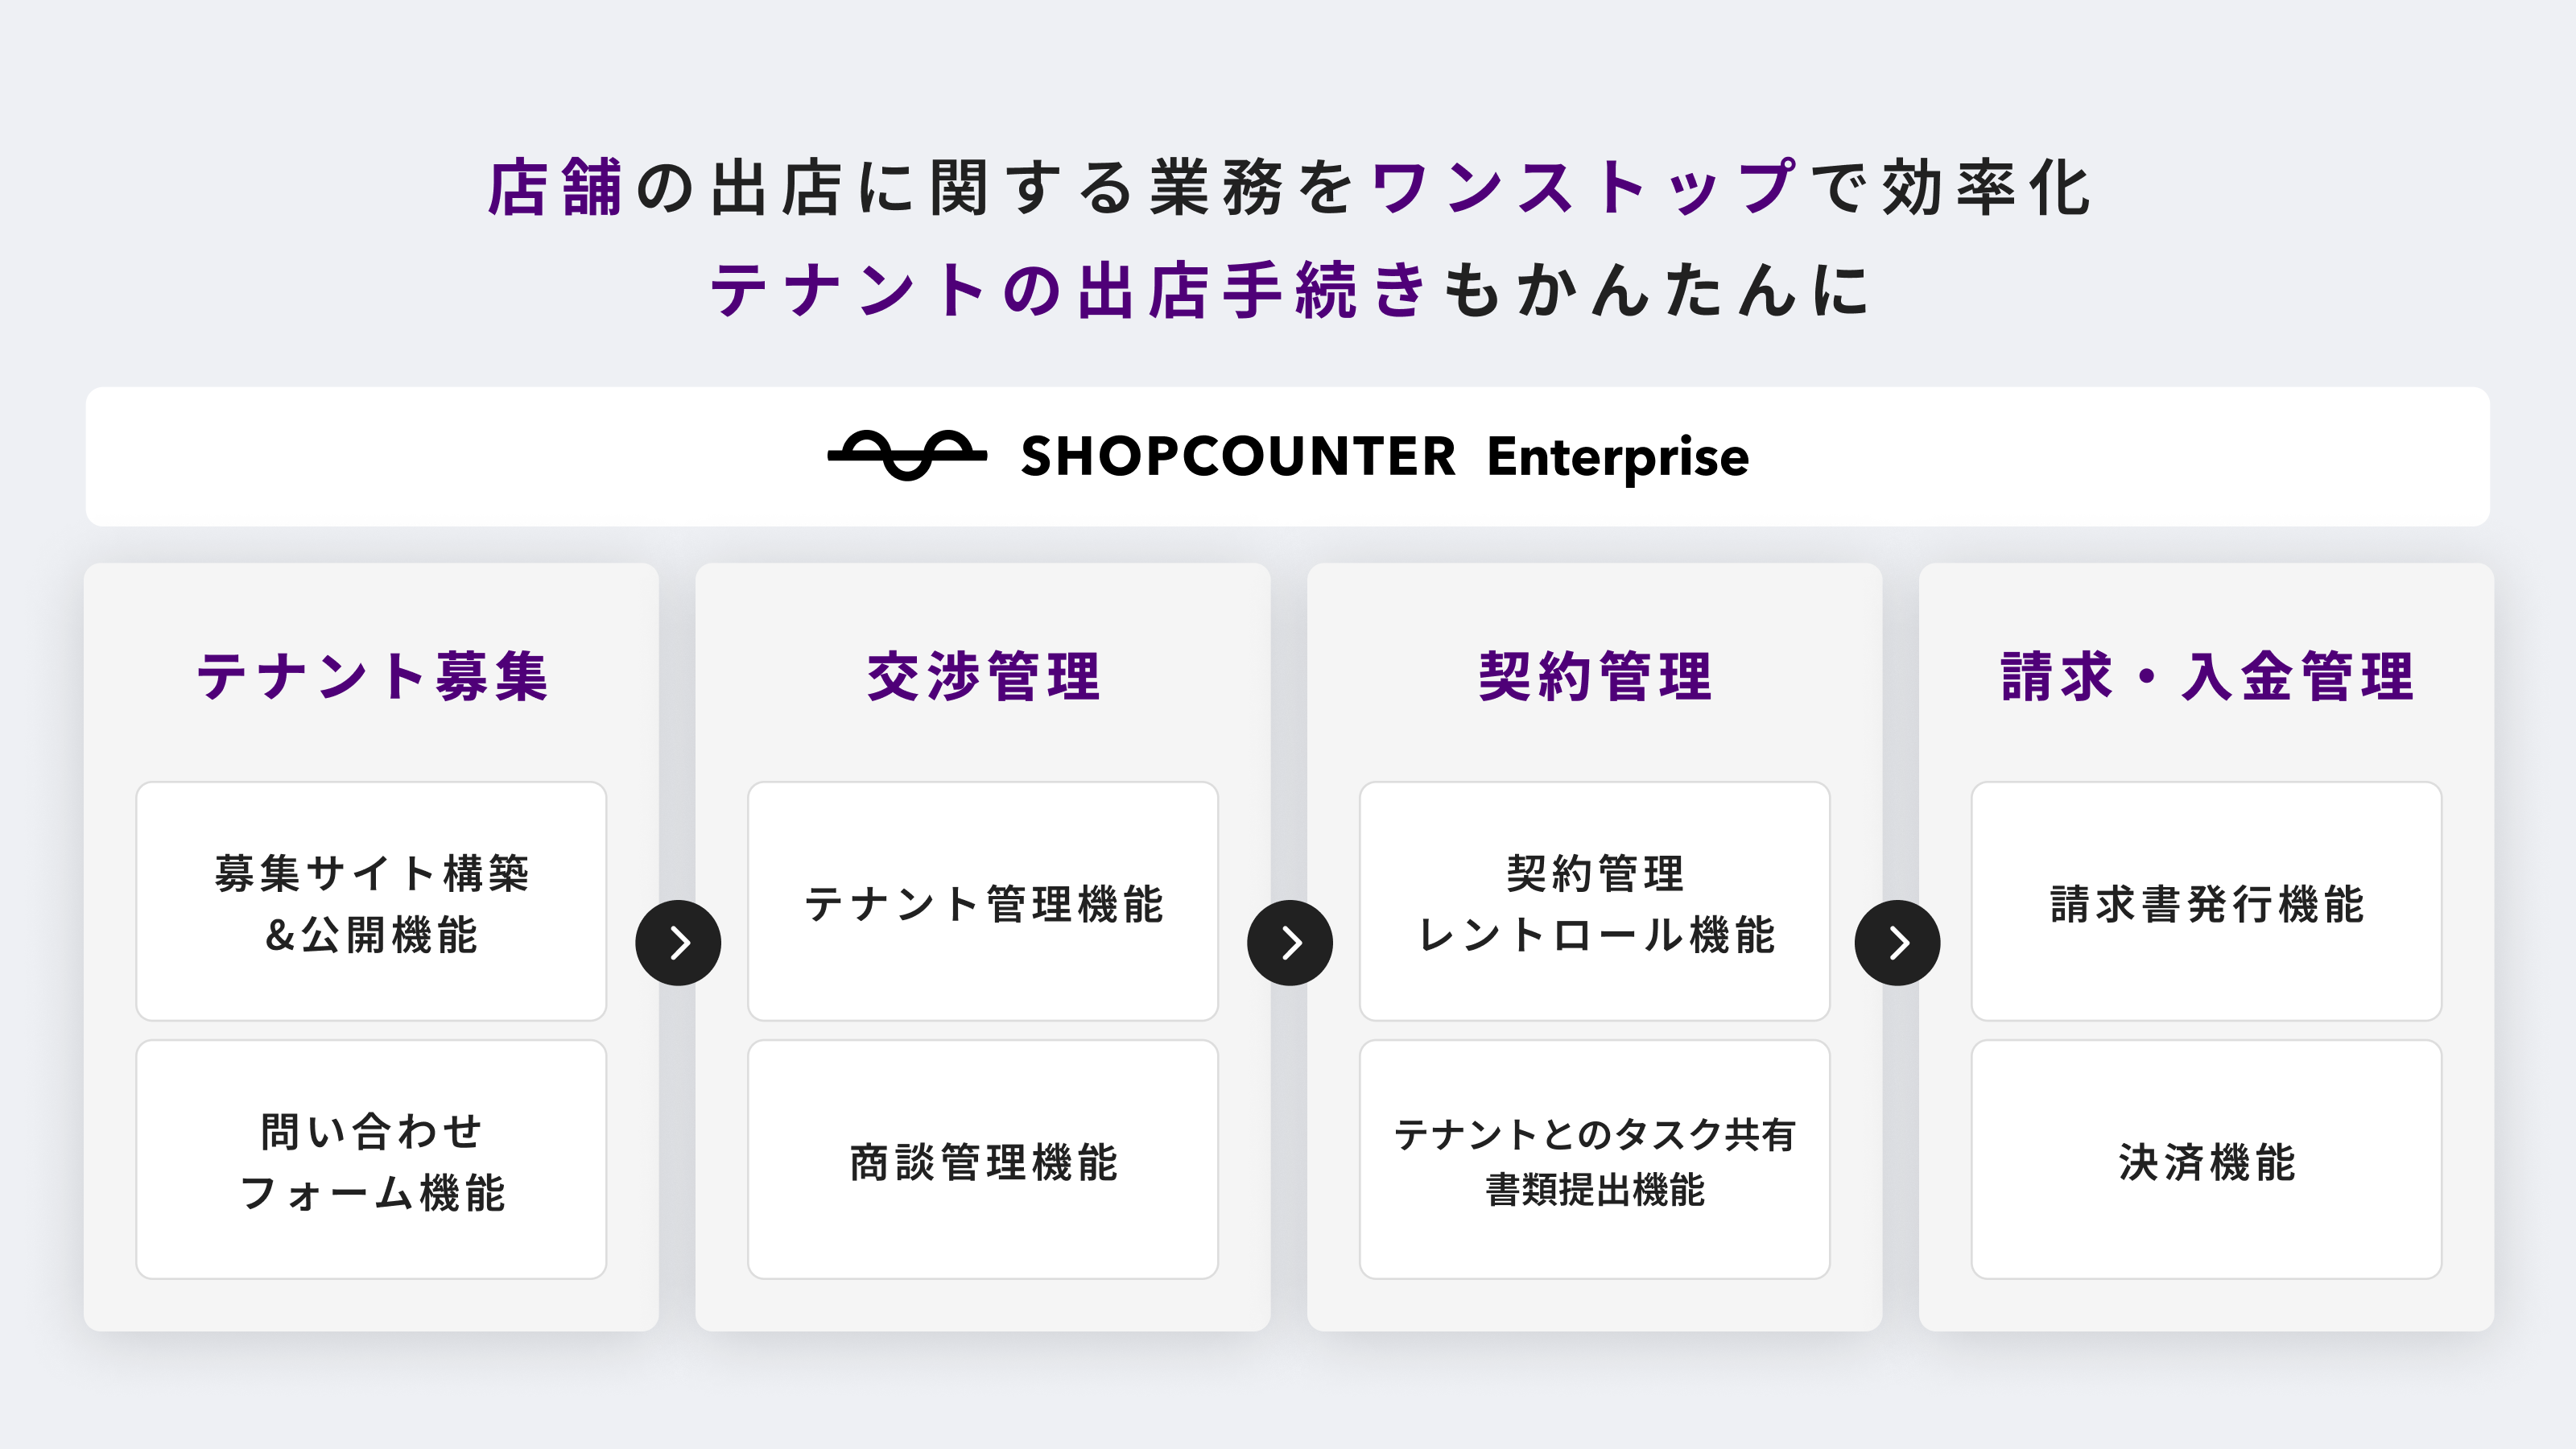 商業施設のオンラインリーシング支援SaaS「SHOPCOUNTER Enterprise」の導入商業施設数が500施設を突破